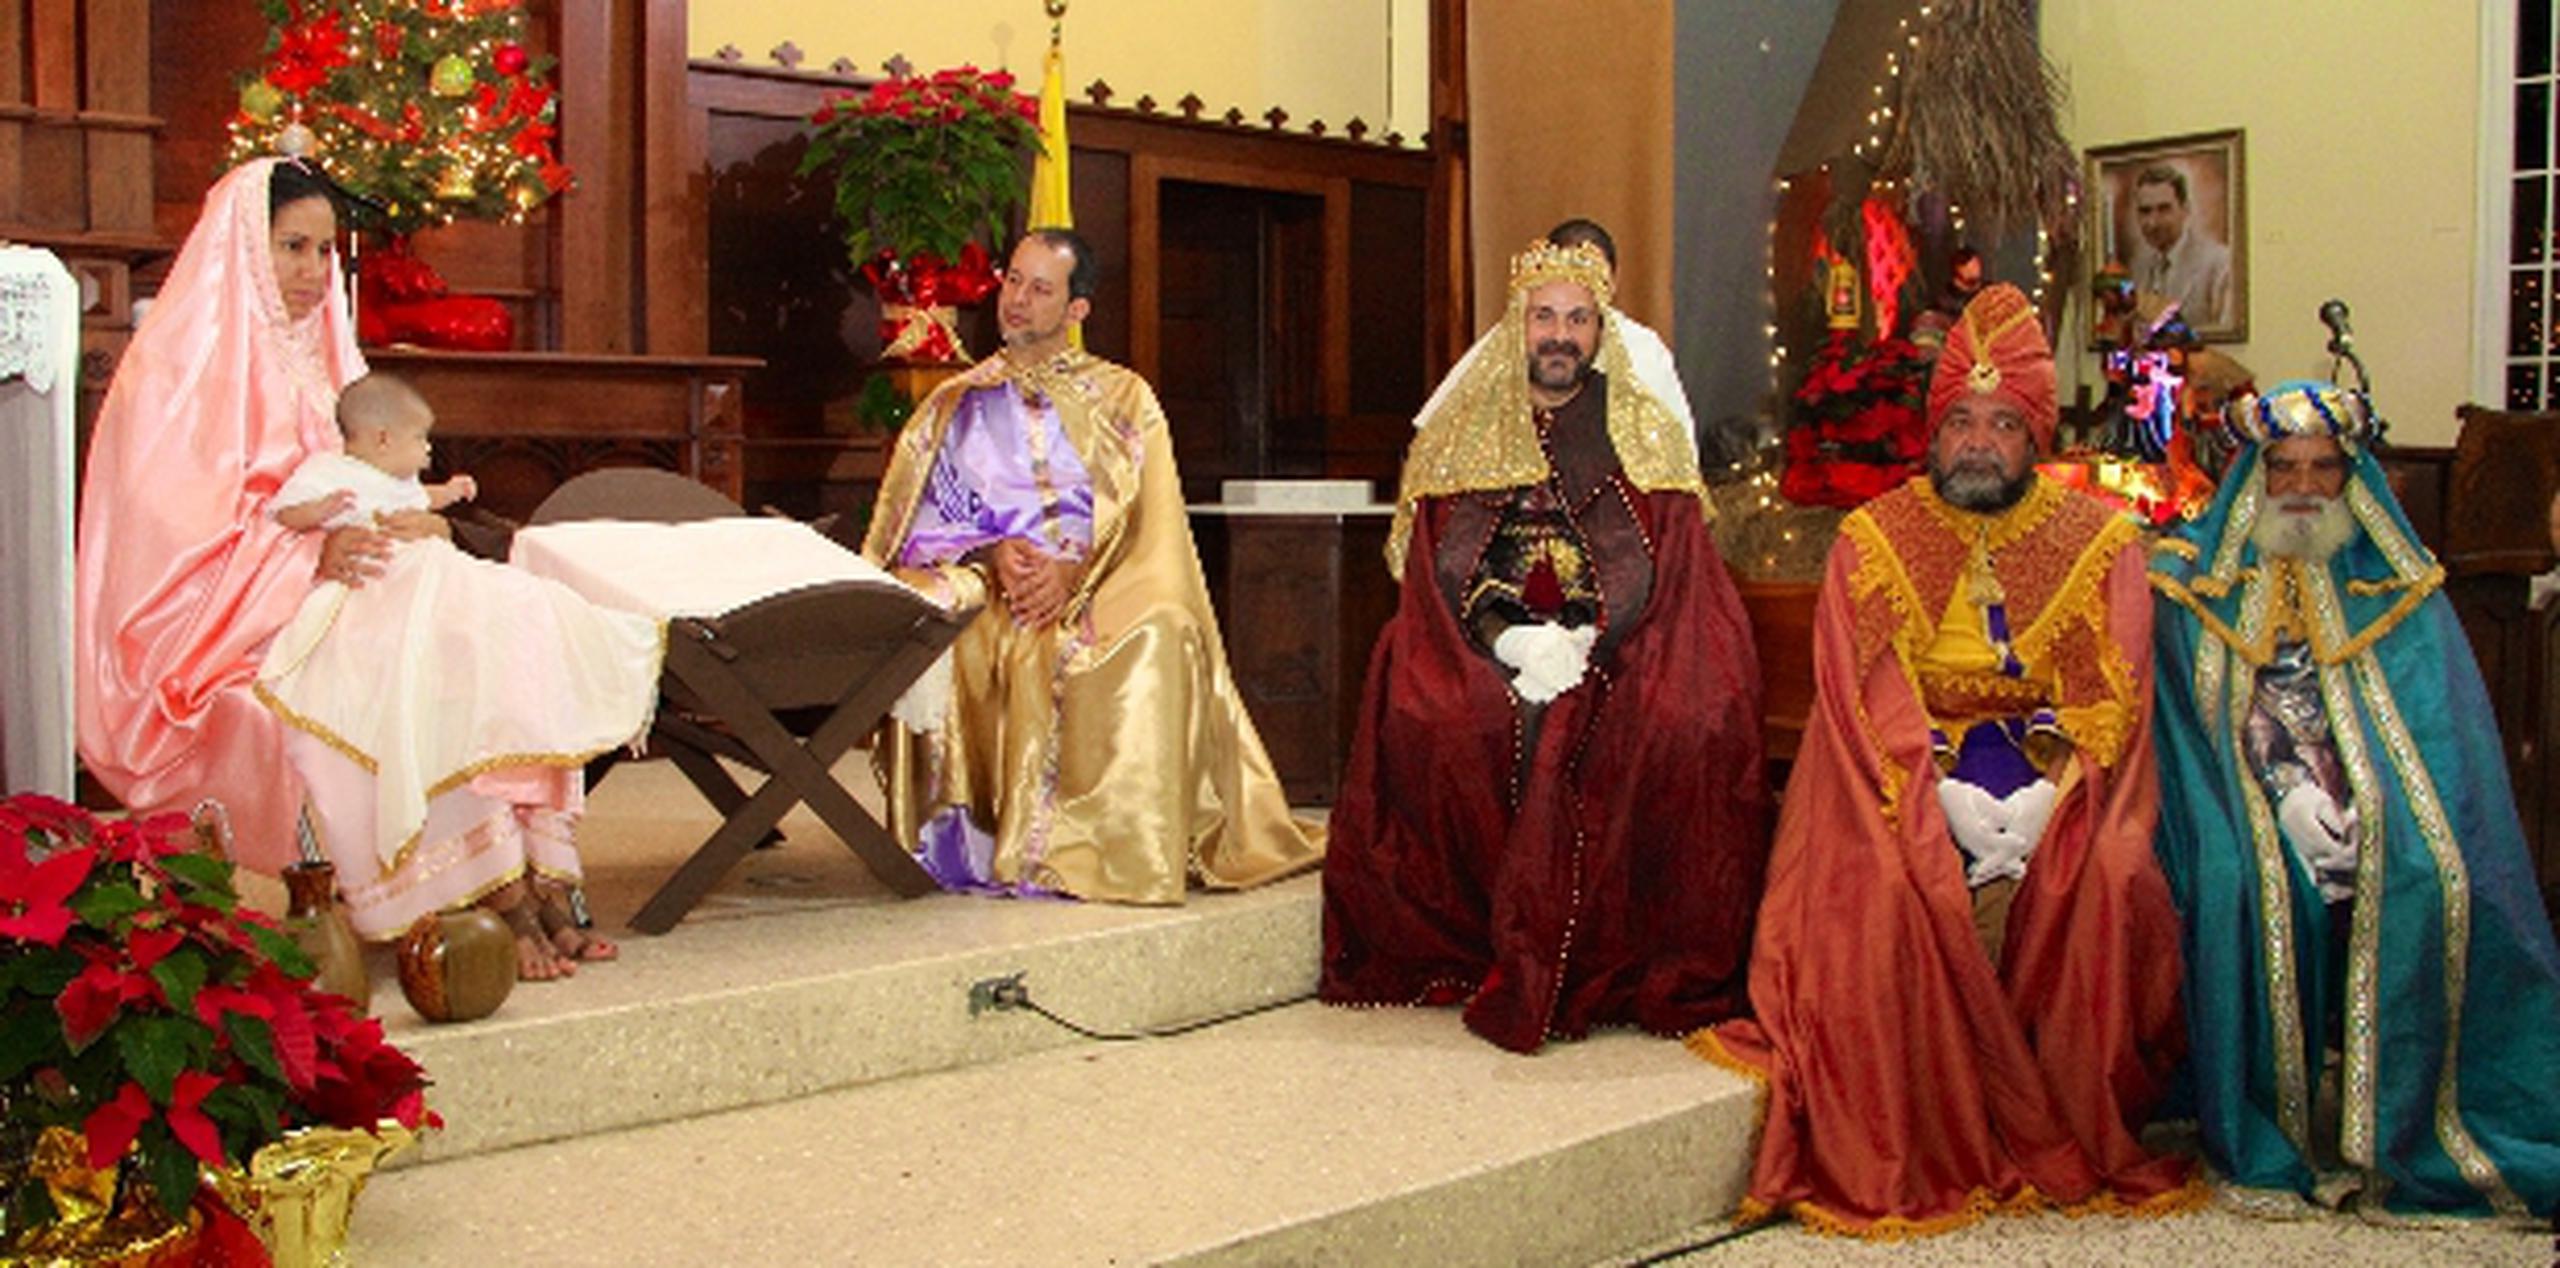 Como parte de la promesa de reyes celebrada en Camuy, se efectuó una misa jíbara en la parroquia San José. (Suministradas)